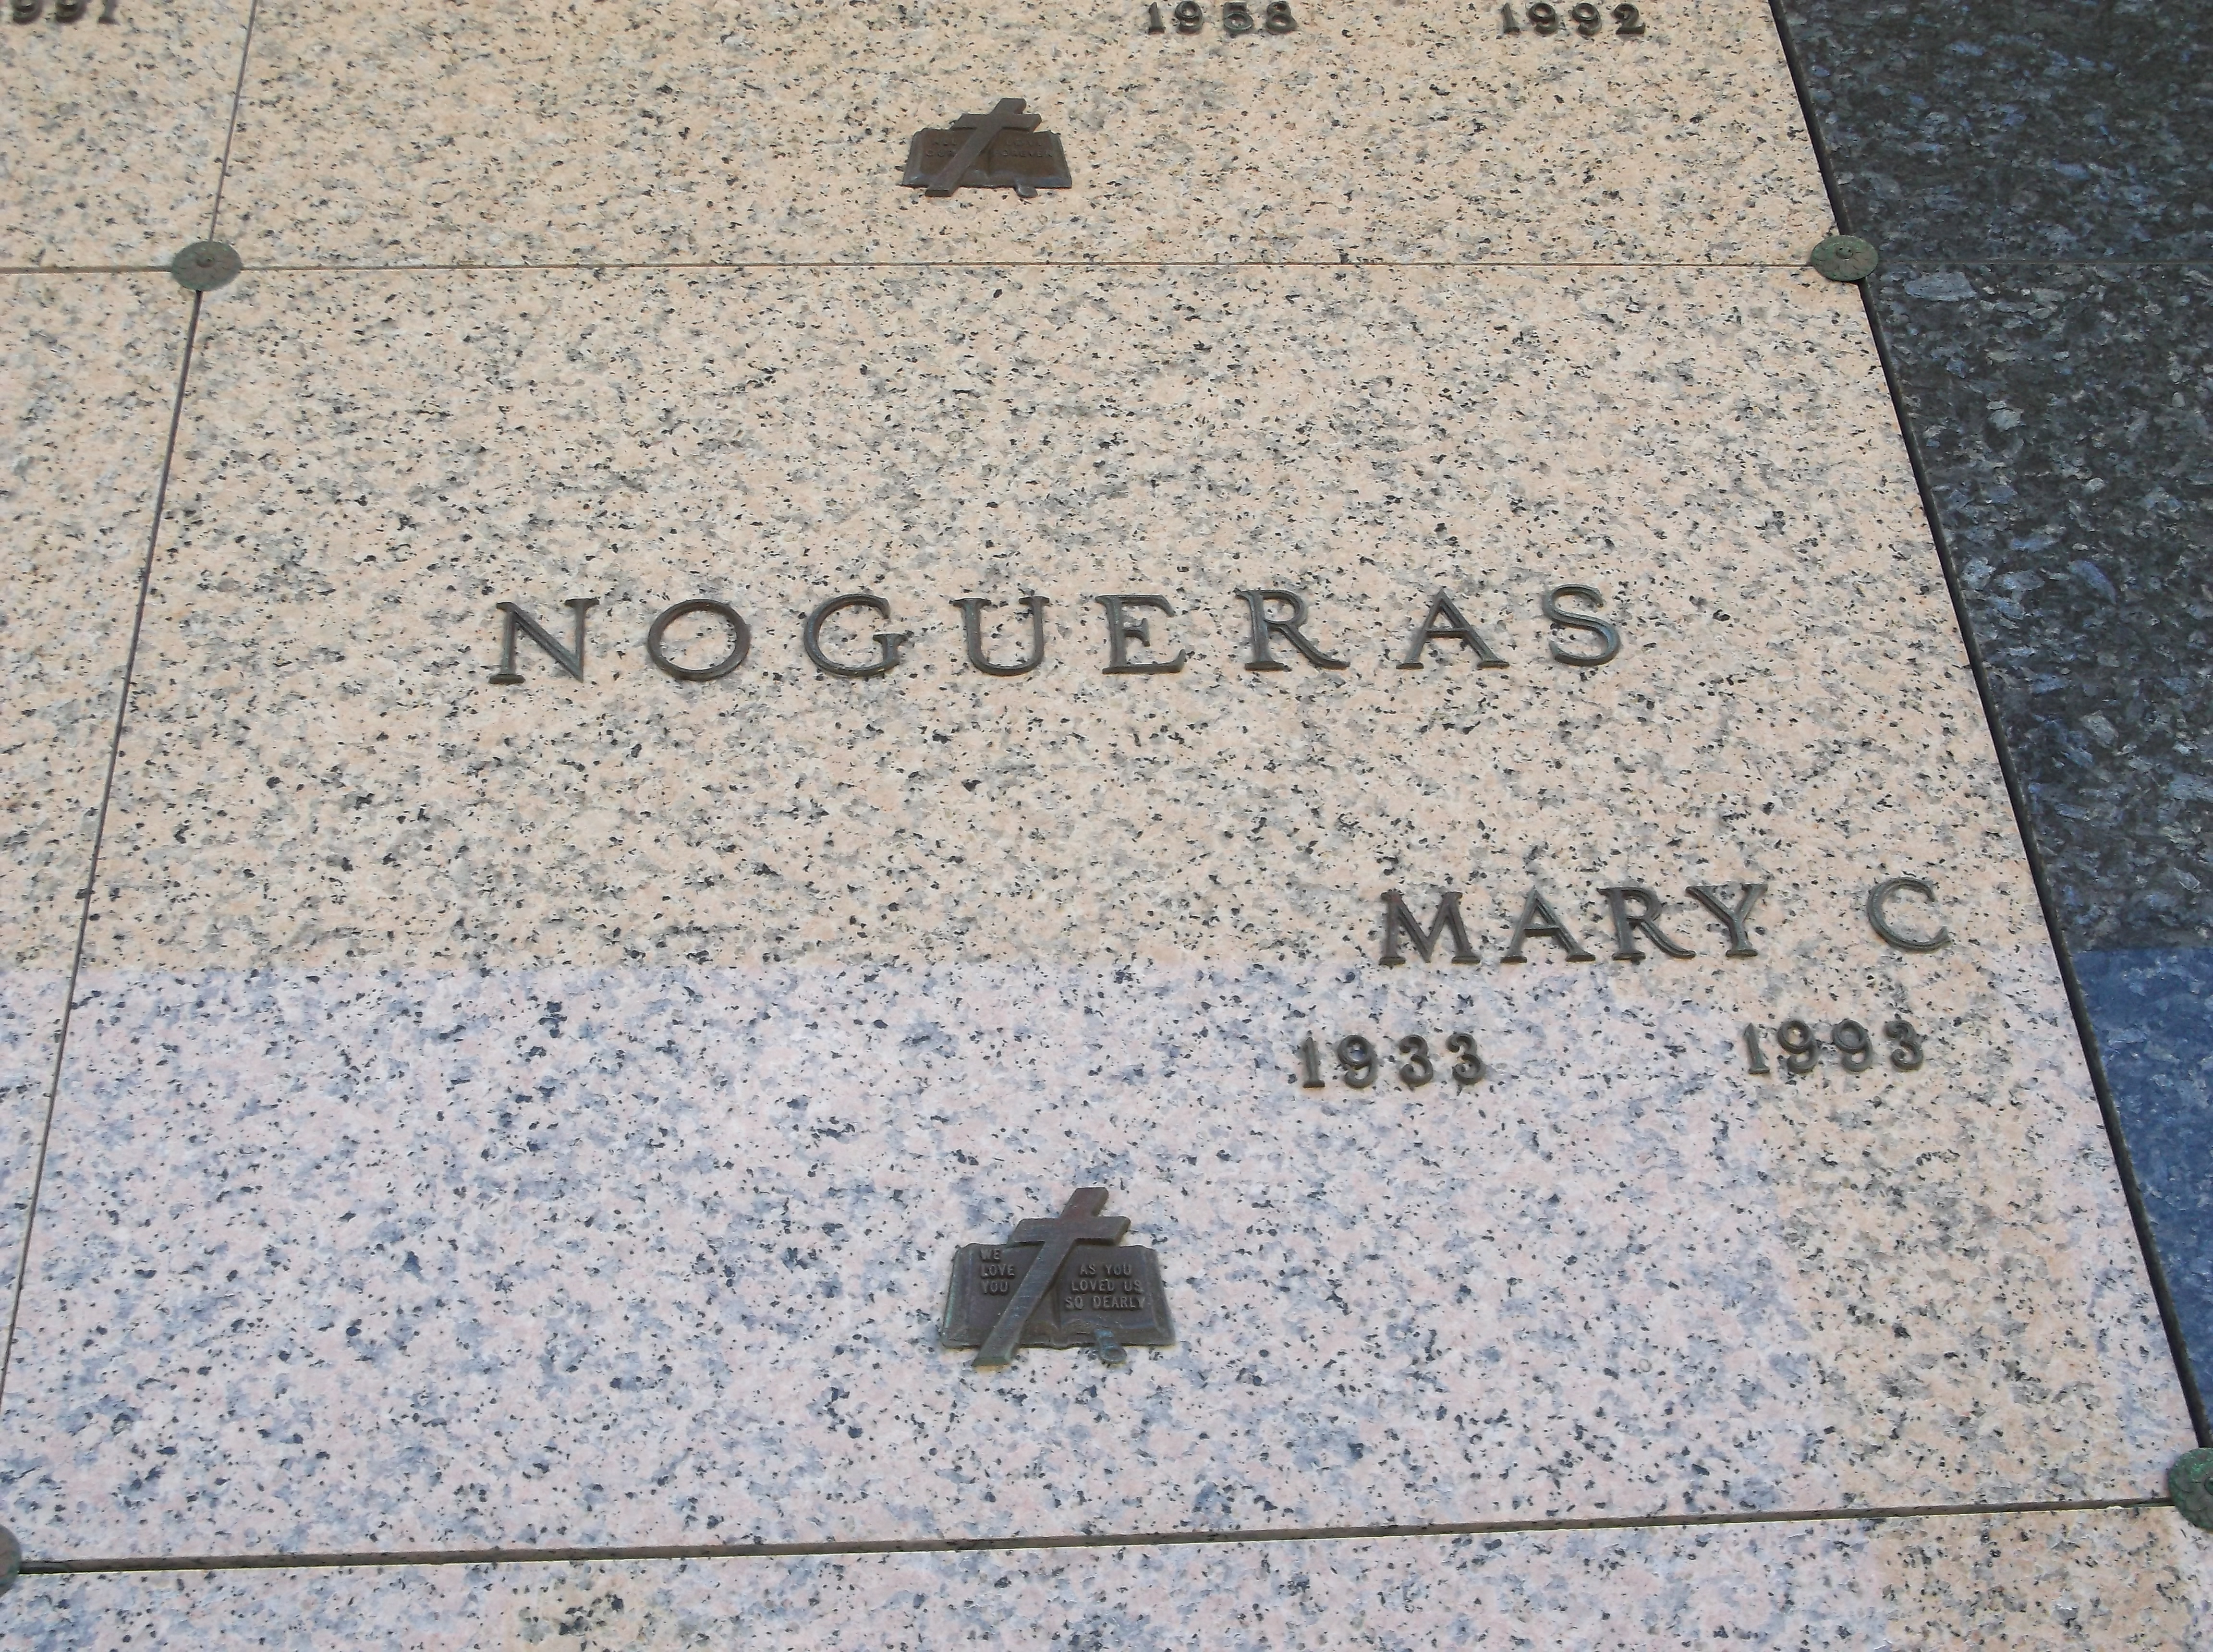 Mary C Nogueras